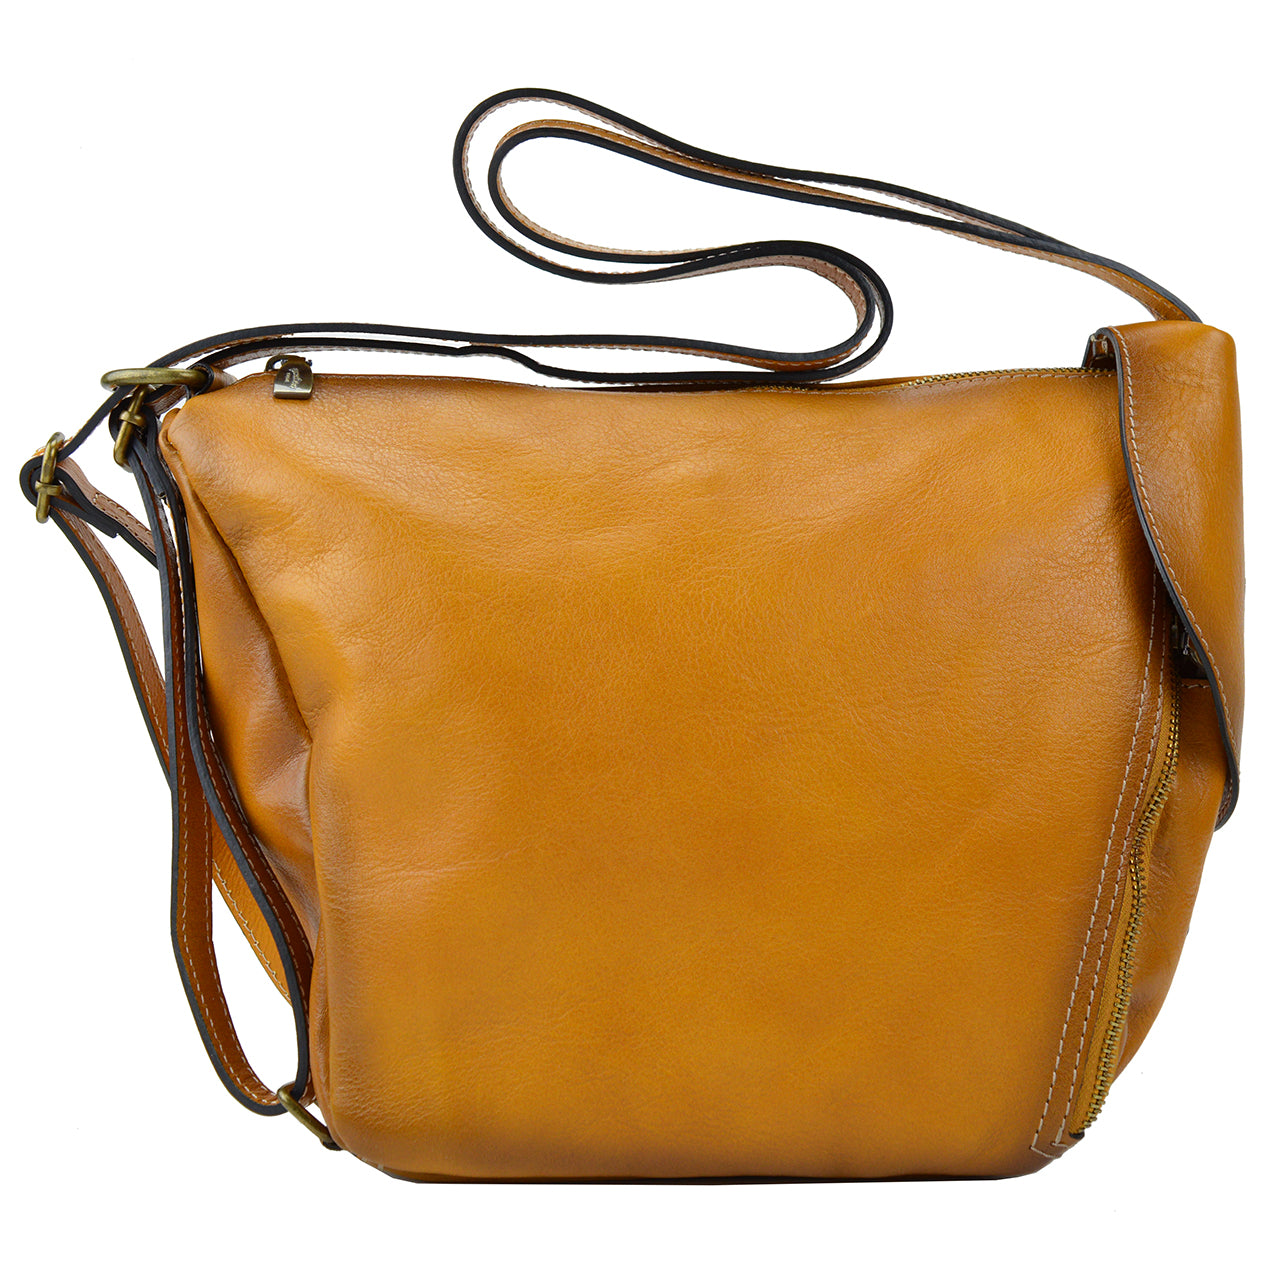 Pratesi Falgano B492 Shoulder Bag in genuine Italian leather